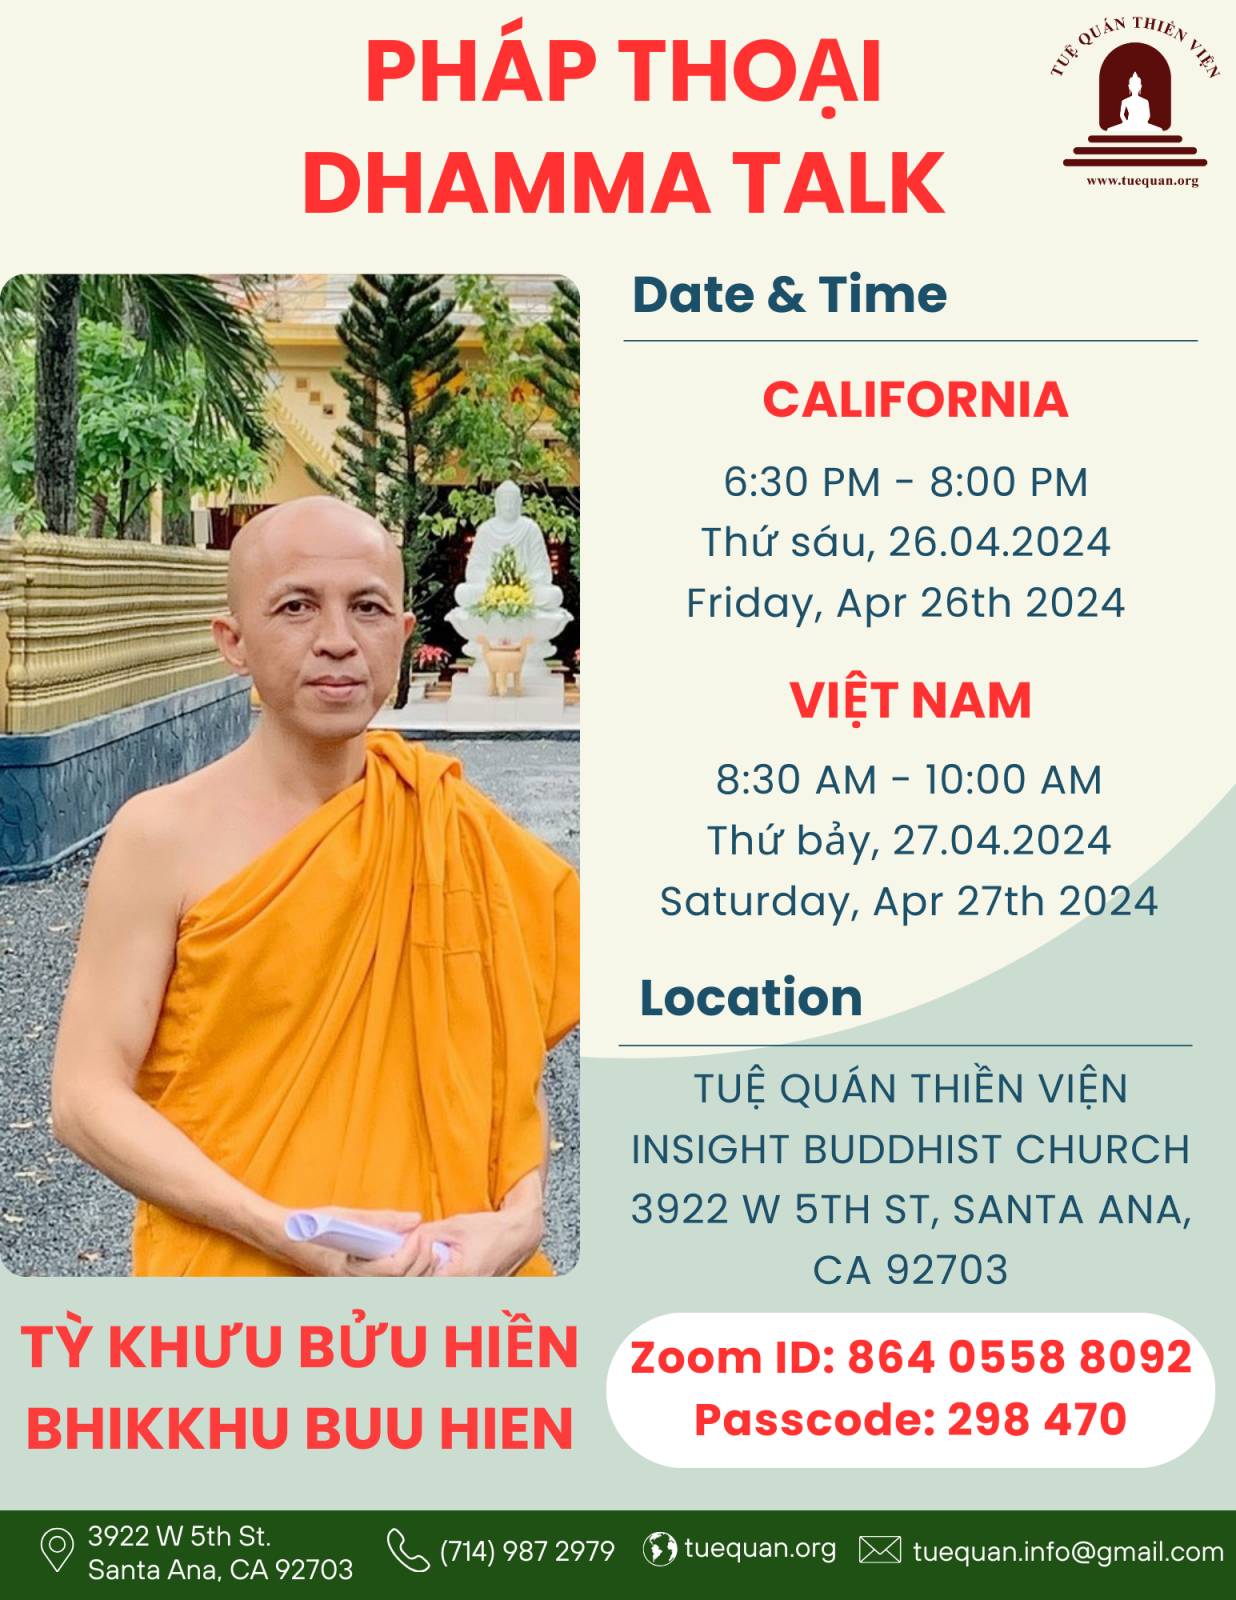 Friday Dhamma talk, Apr 26th 2024